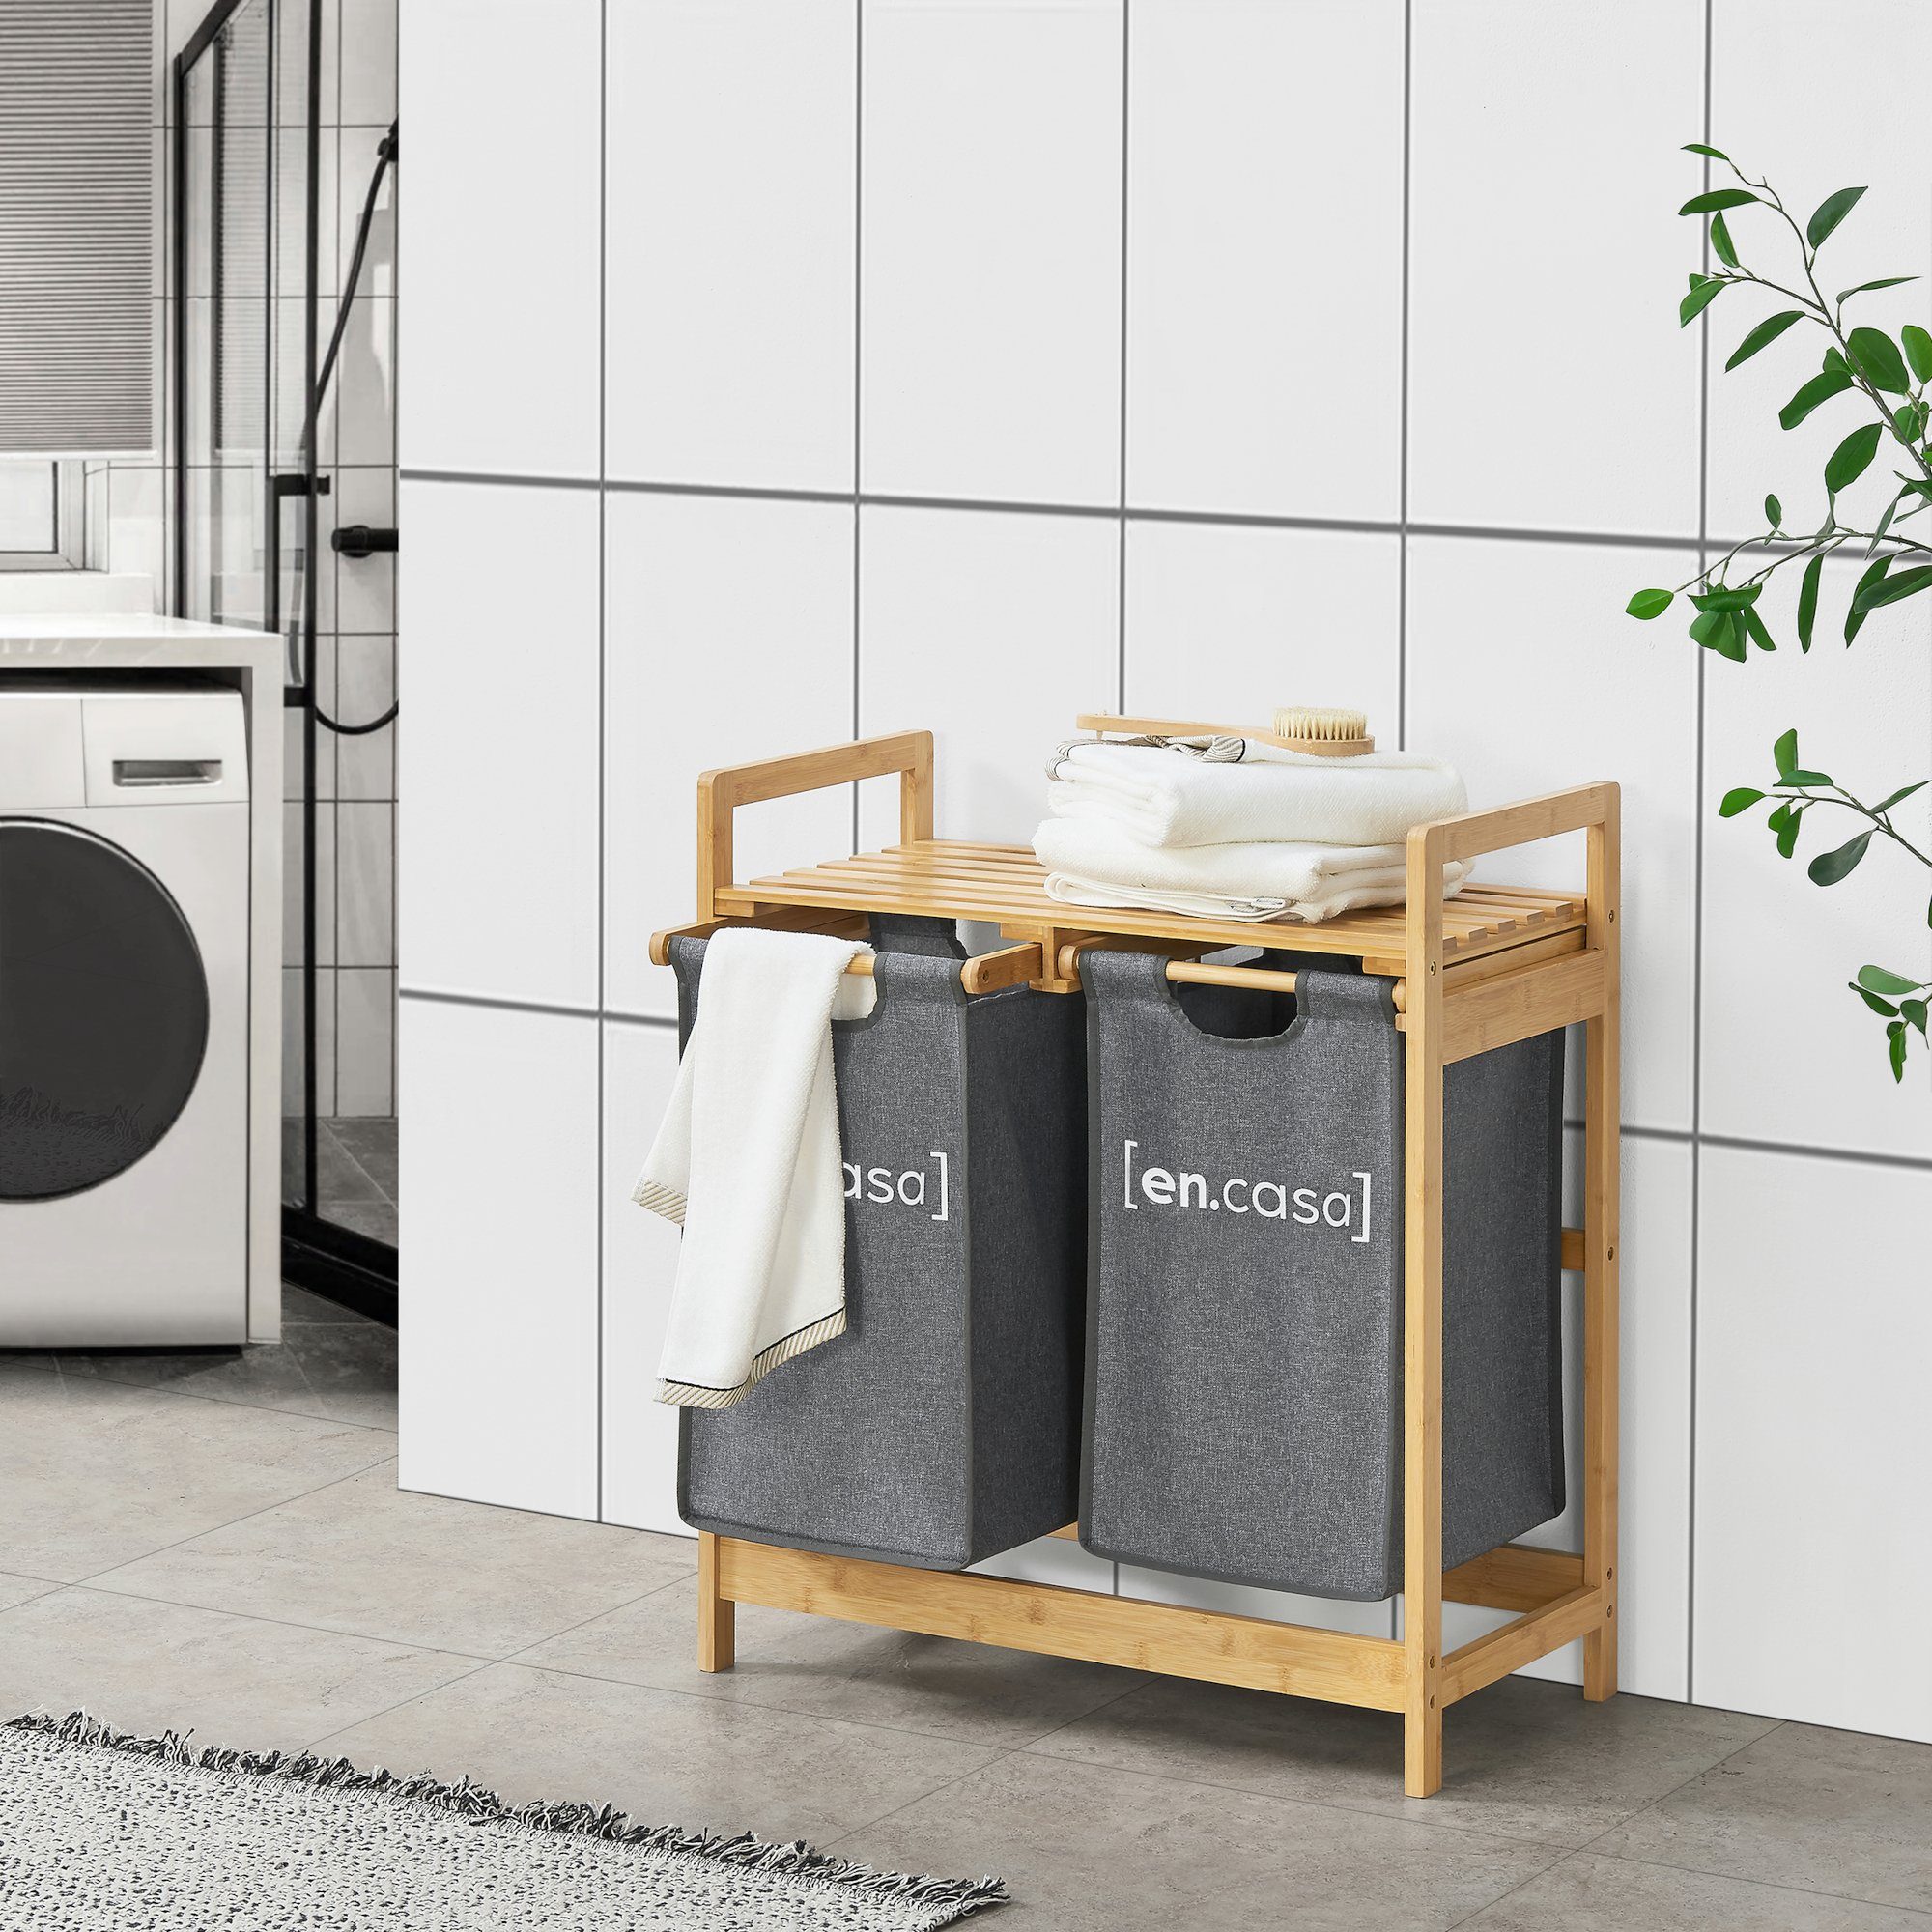 en.casa Badregal, »Kärkölä« Bambus Wäscheständer 2 Waschsäcken ausziehbar mit Natur/Grau